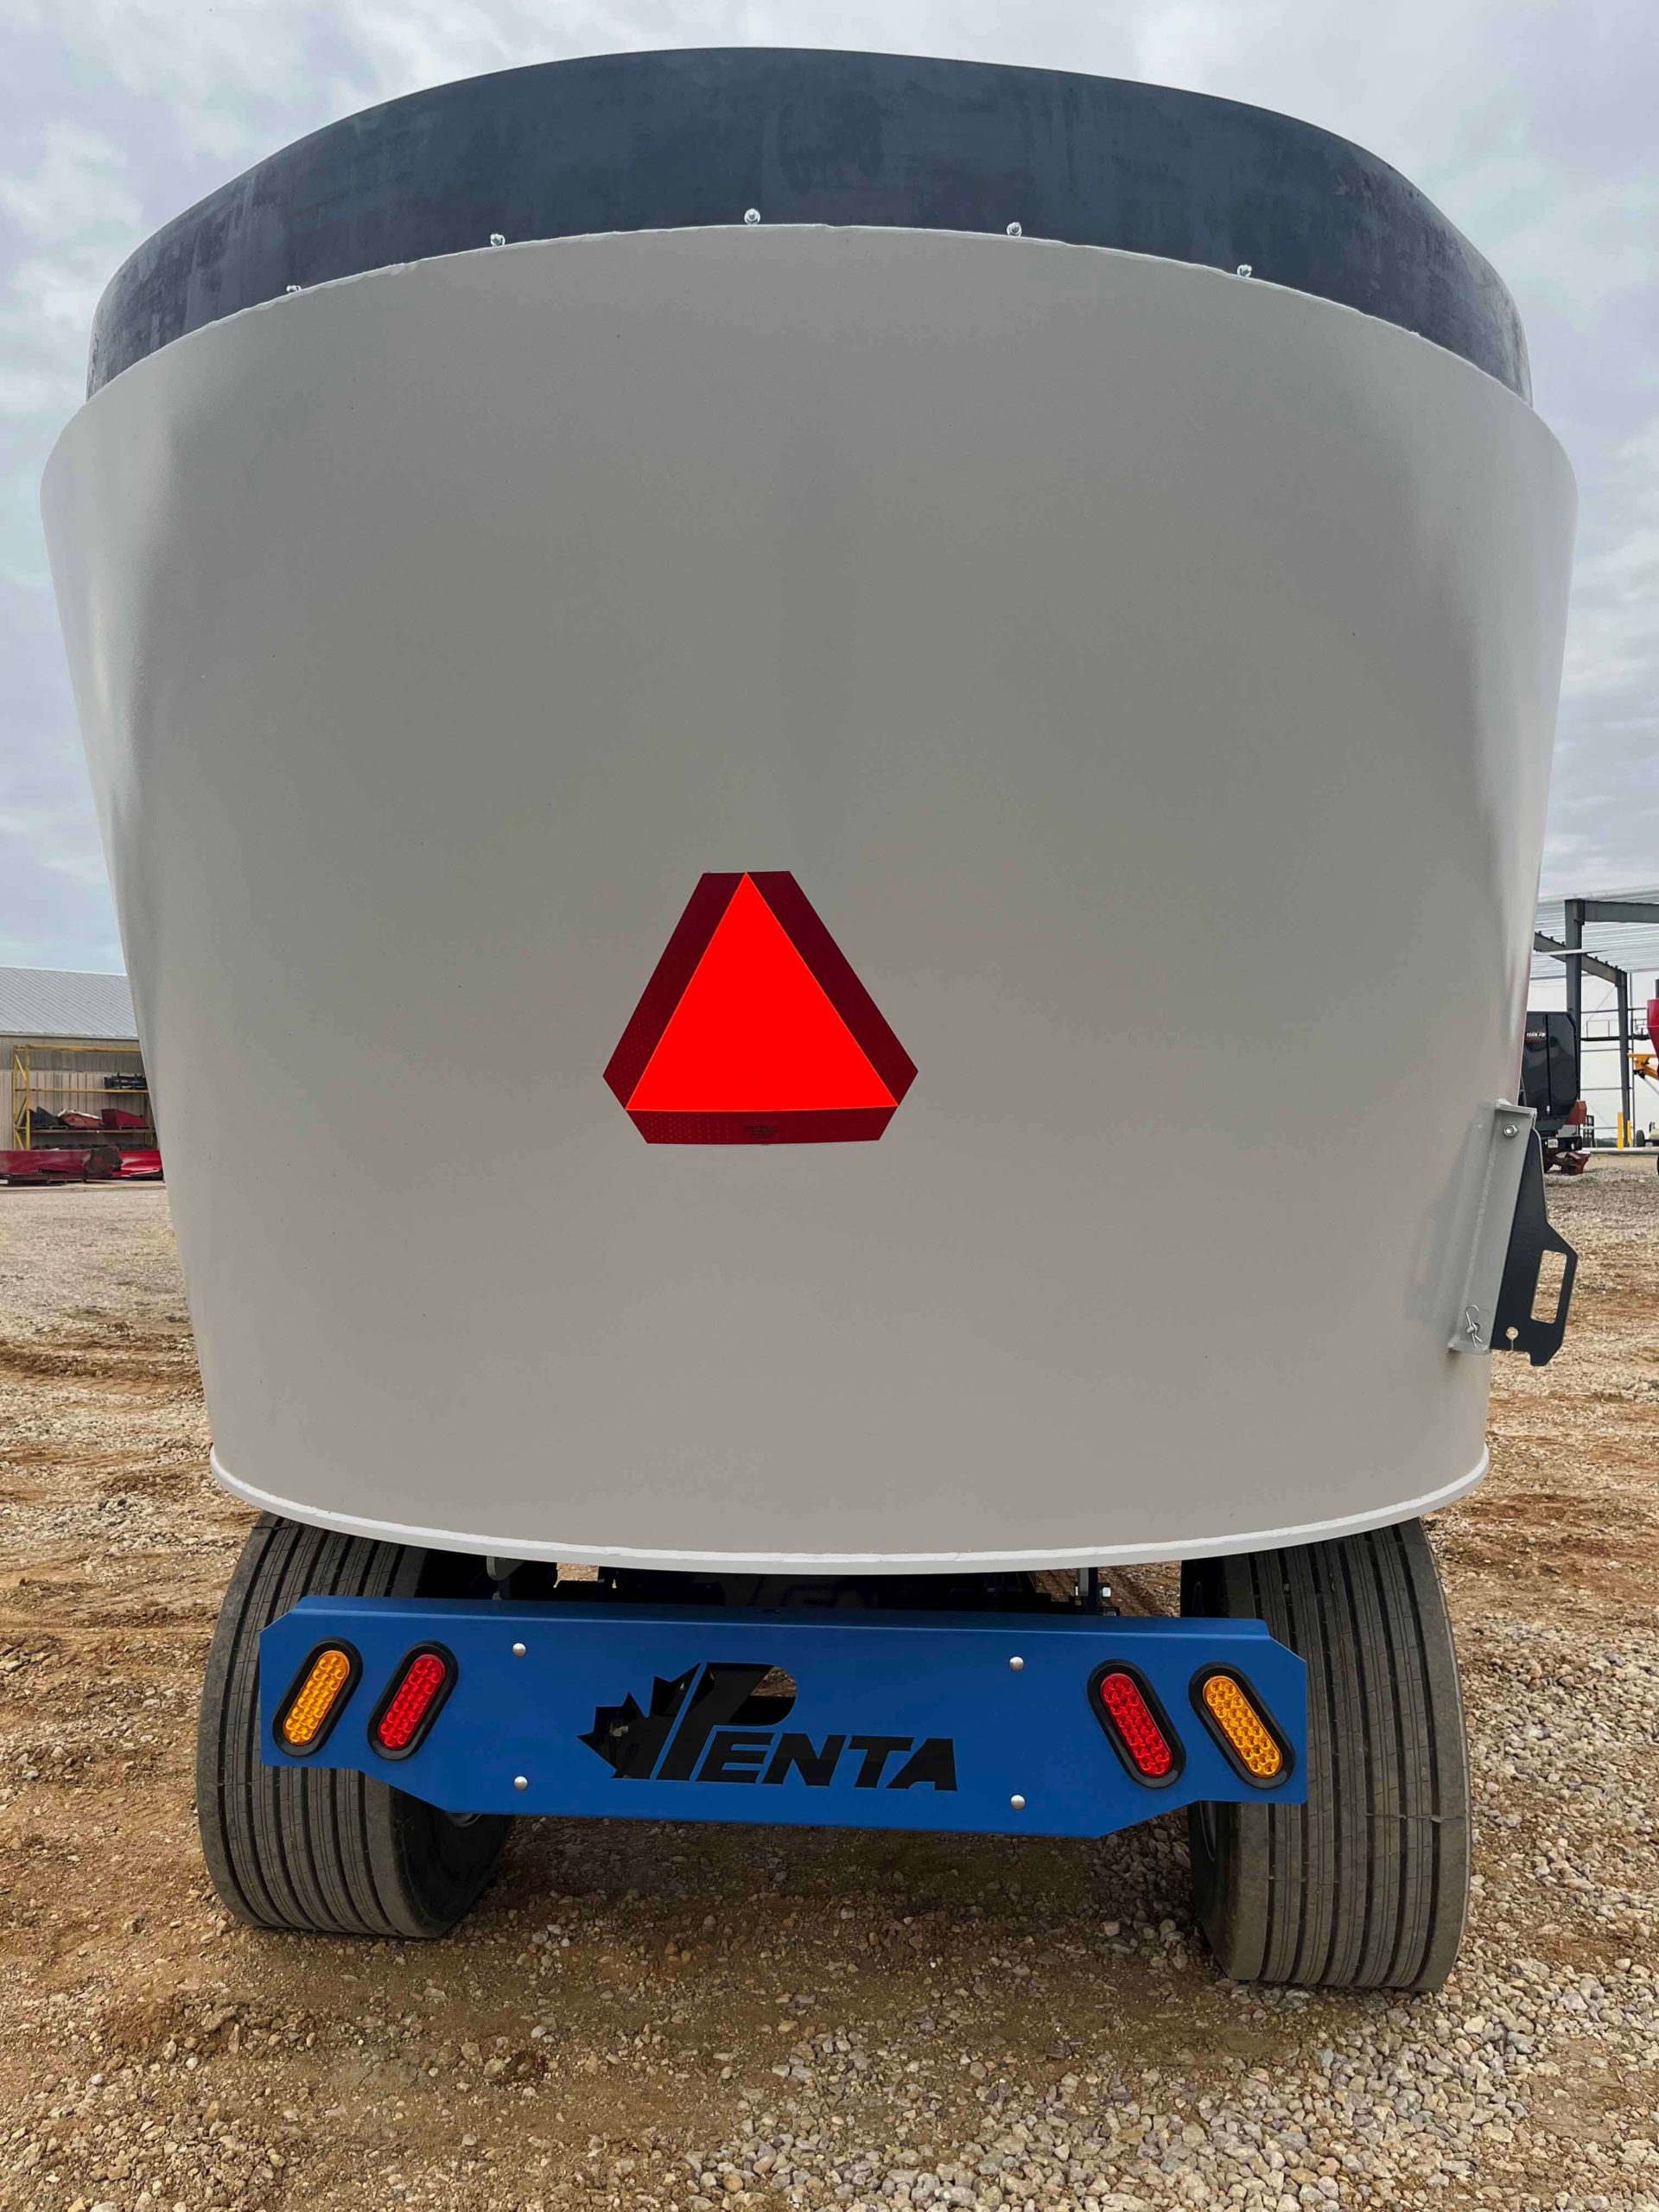 Penta-4130-Vertical-Mixer-Wagon